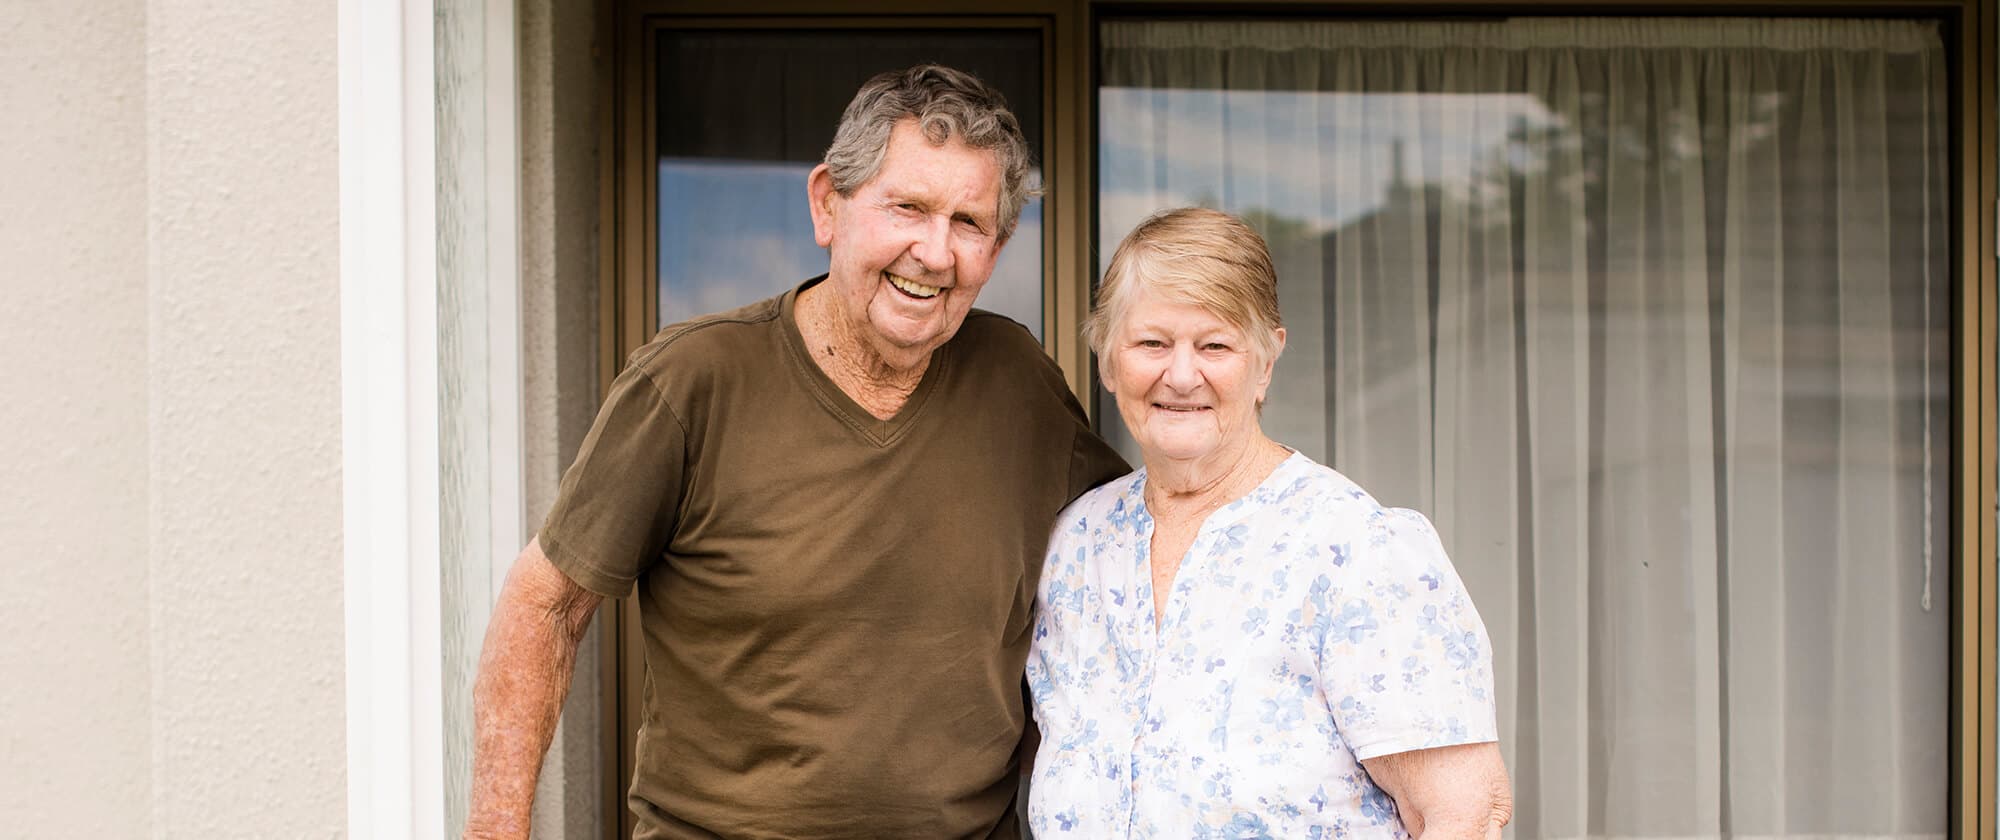 Retirement Villages New Zealand